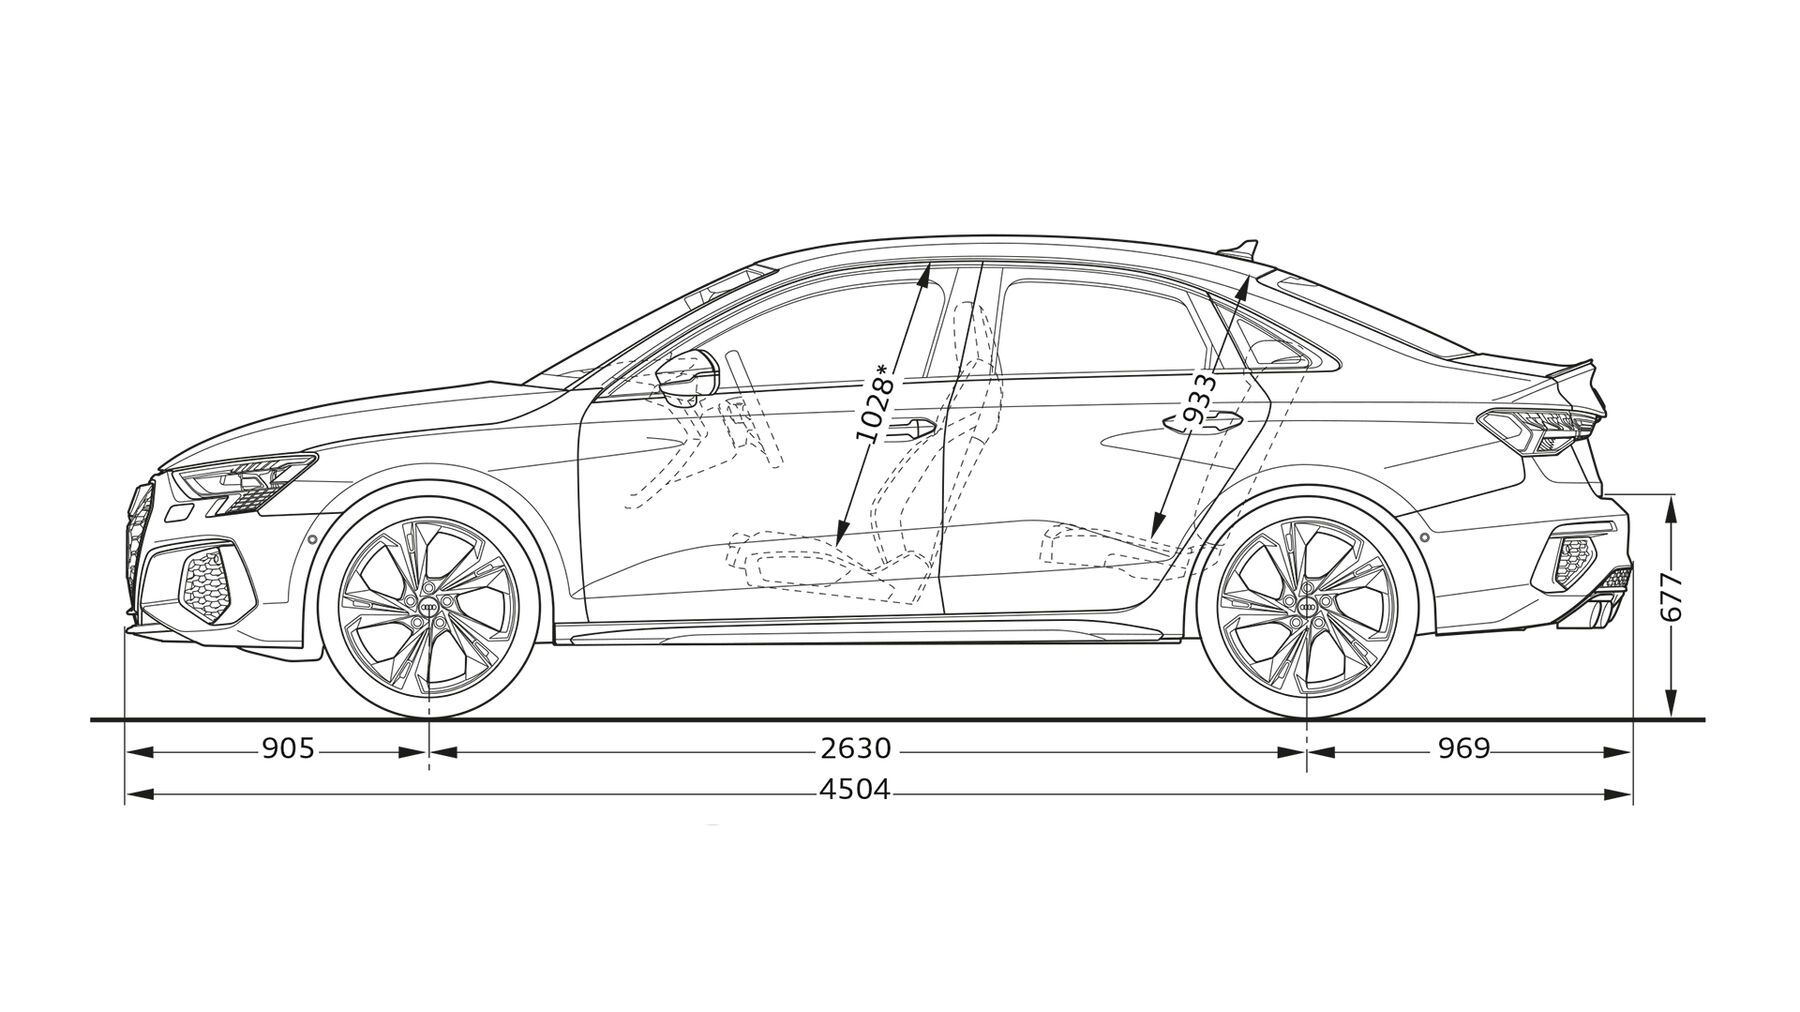 Abmessungen der Audi S3 Limousine in der Seitenansicht